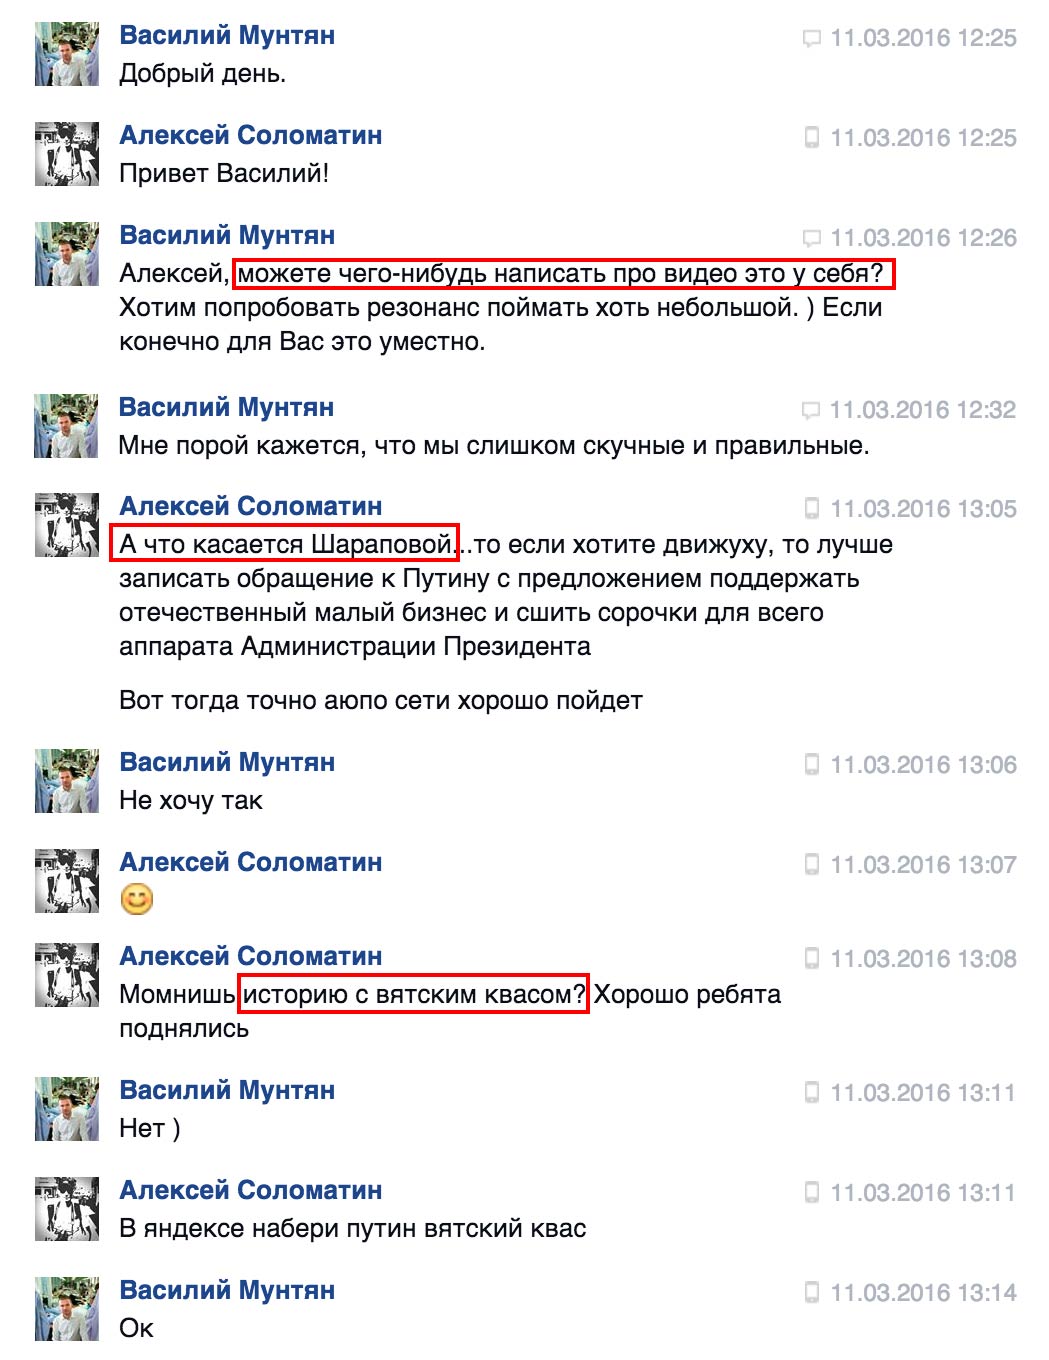 БЛОГ: «Какую из российских компаний прорекламирует Шарапова?» — фотограф Алексей Соломатин 2